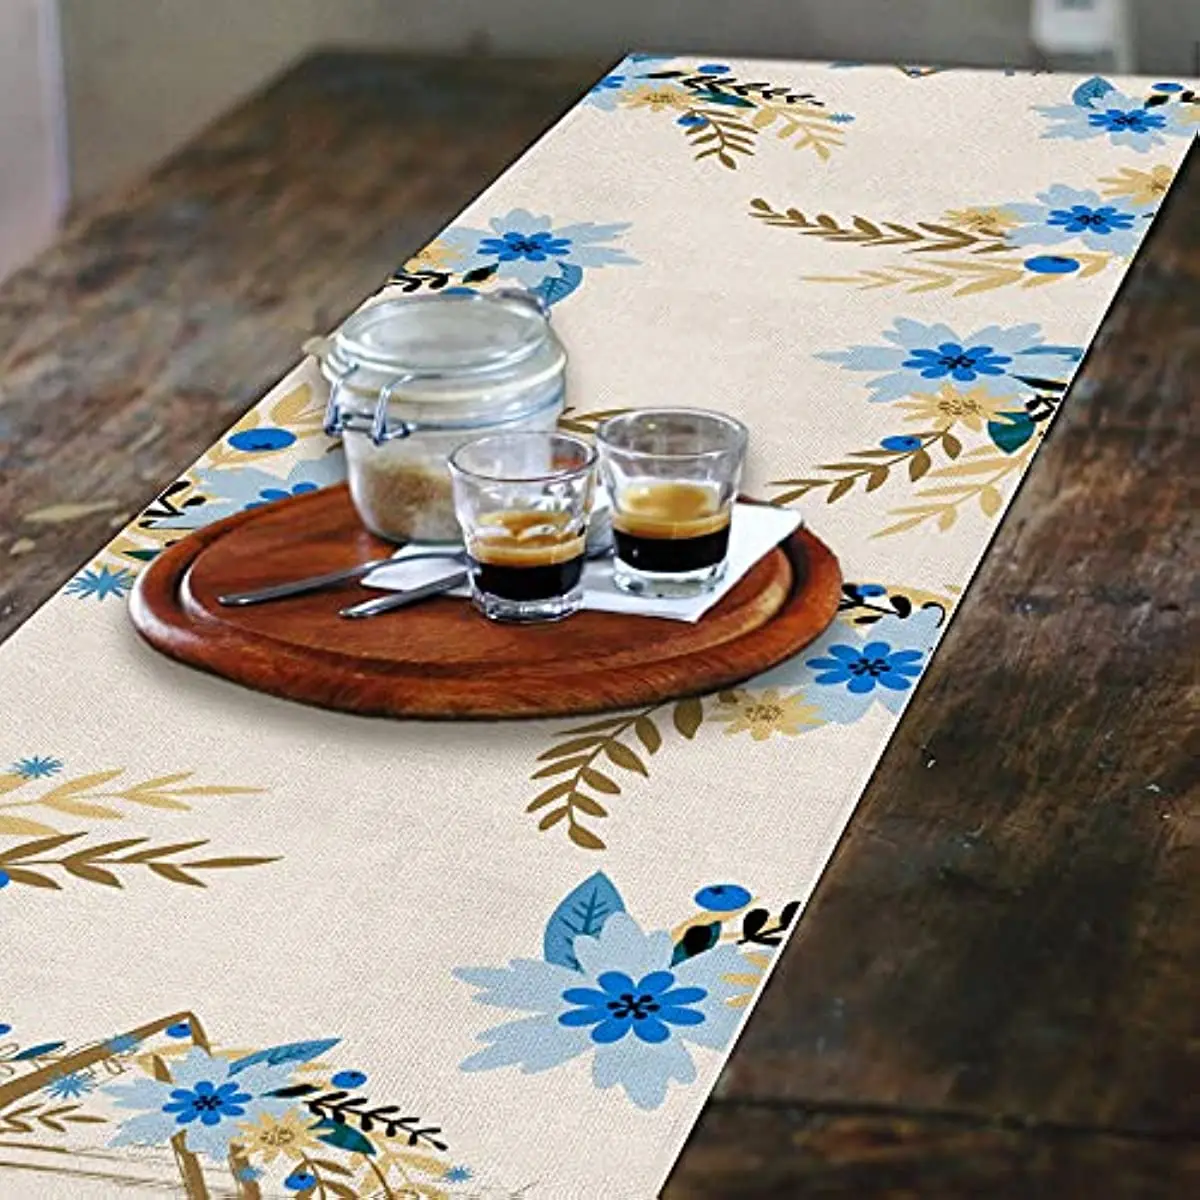 פסח דקור כחול פרח חנוכה שולחן רץ יהודית עונתי יום נישואים חג תפאורה אוכל החווה בית המפלגה תפאורה